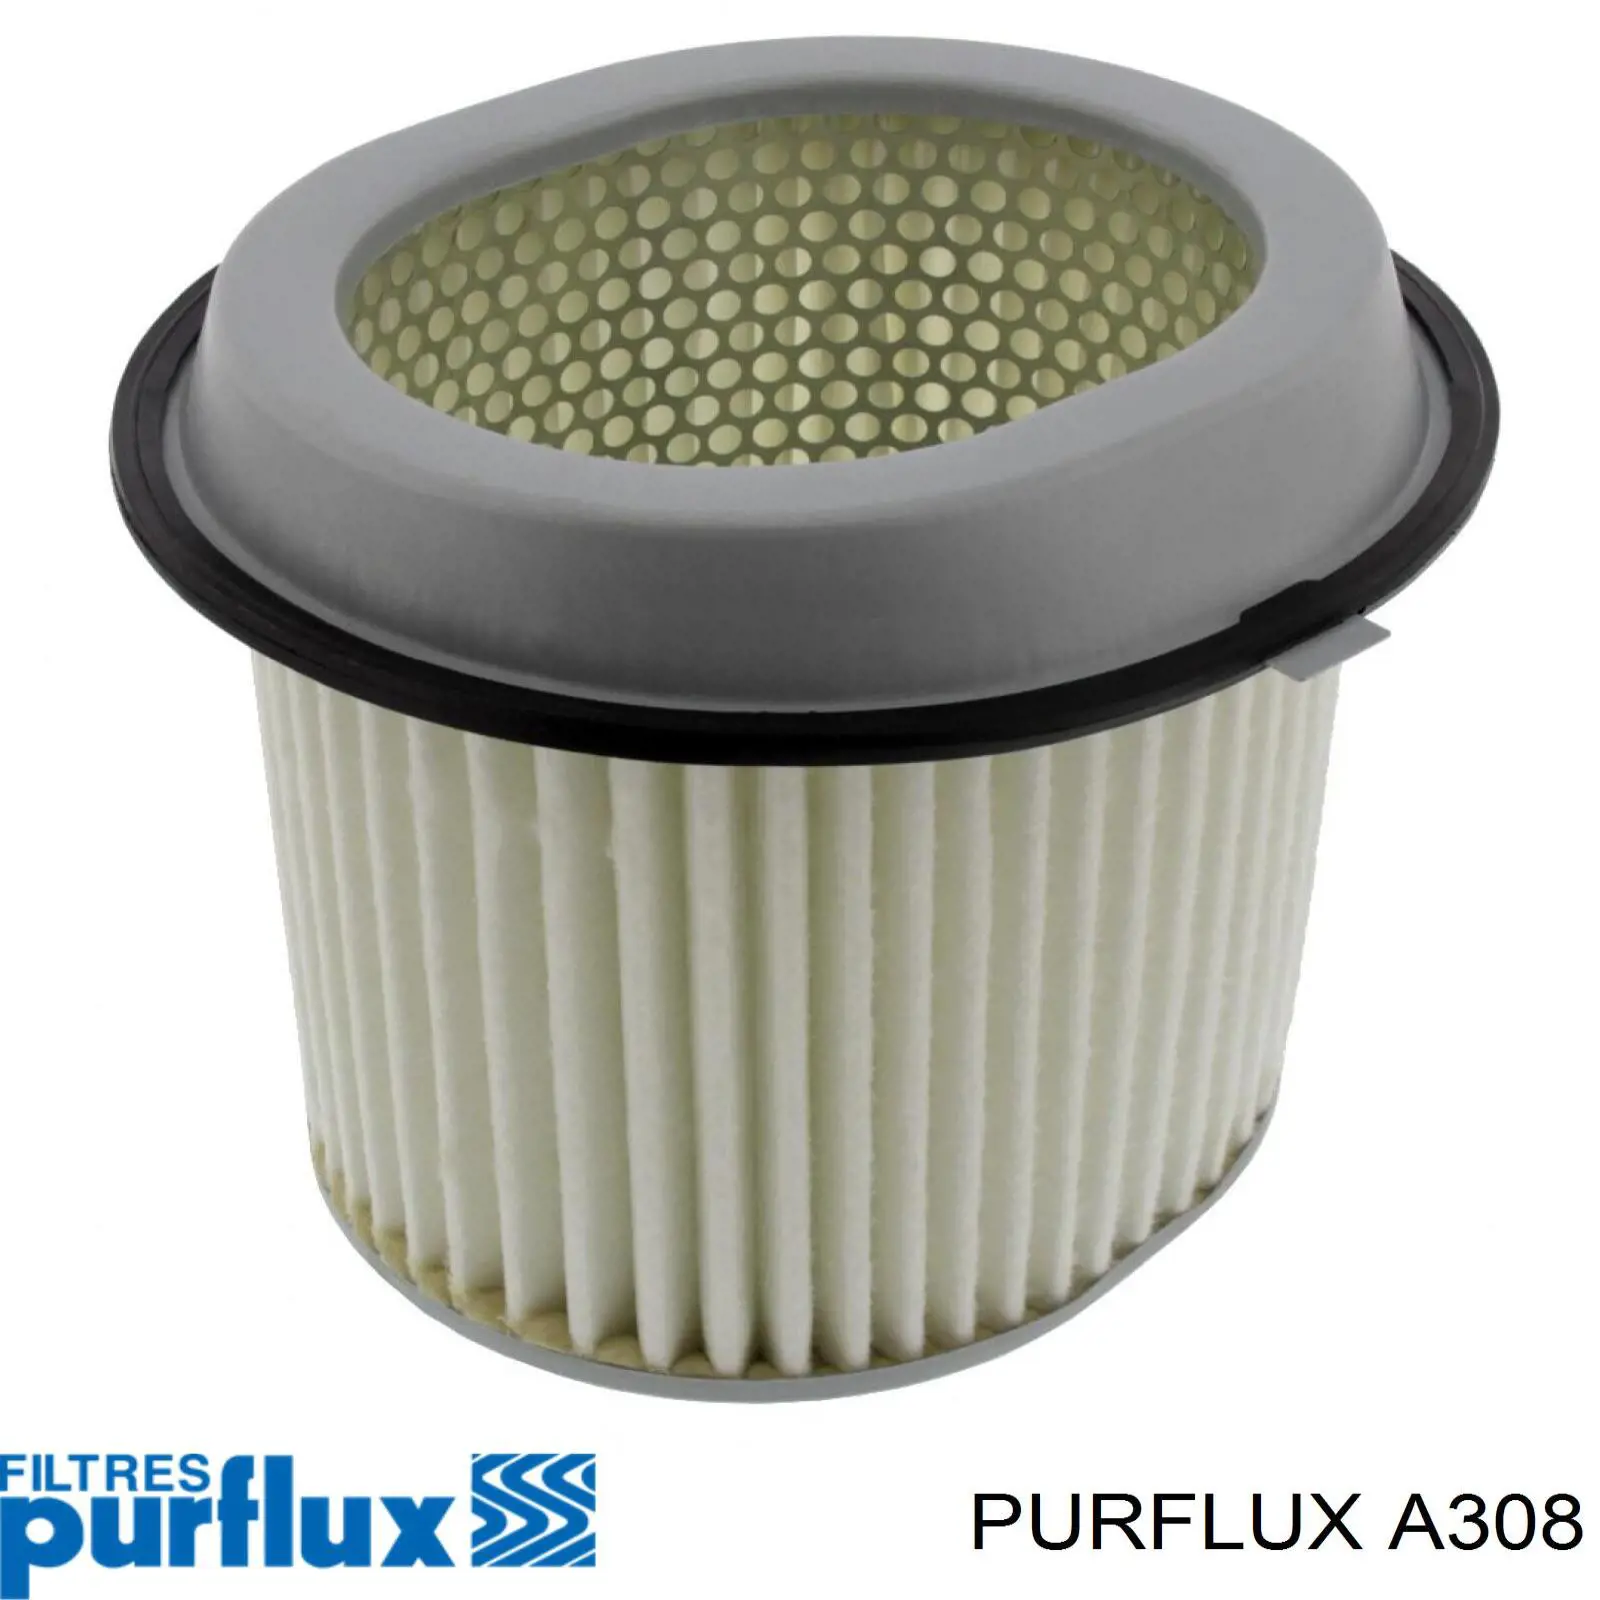 A308 Purflux filtro de aire